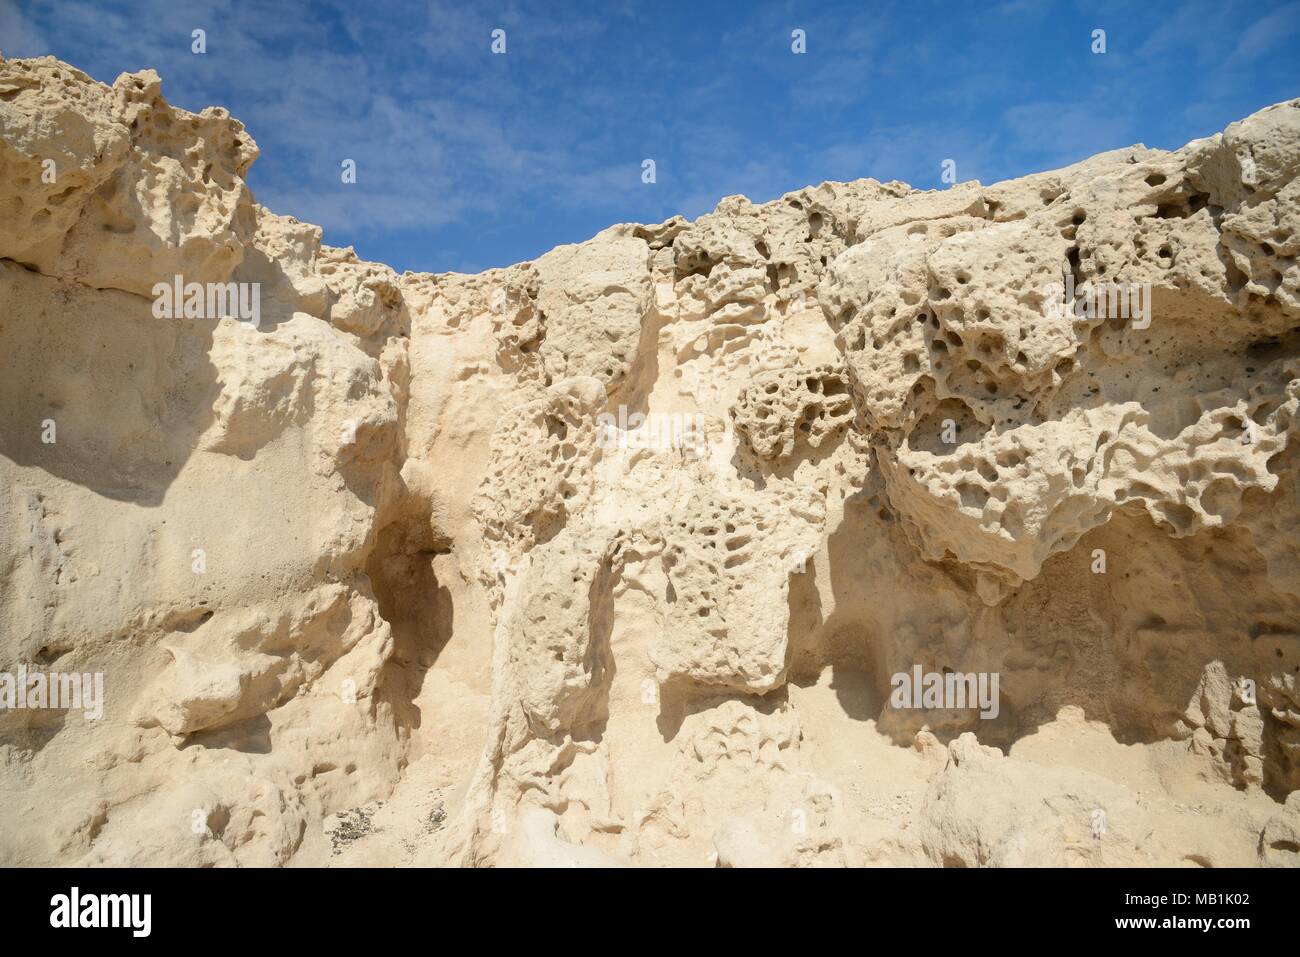 Fortement érodé de dunes de sable fossilisées calcarenite Pliocène, soulevés les roches sédimentaires, Monument Naturel d'Ajuy (Puerto de la Peña), Fuerteventura Banque D'Images